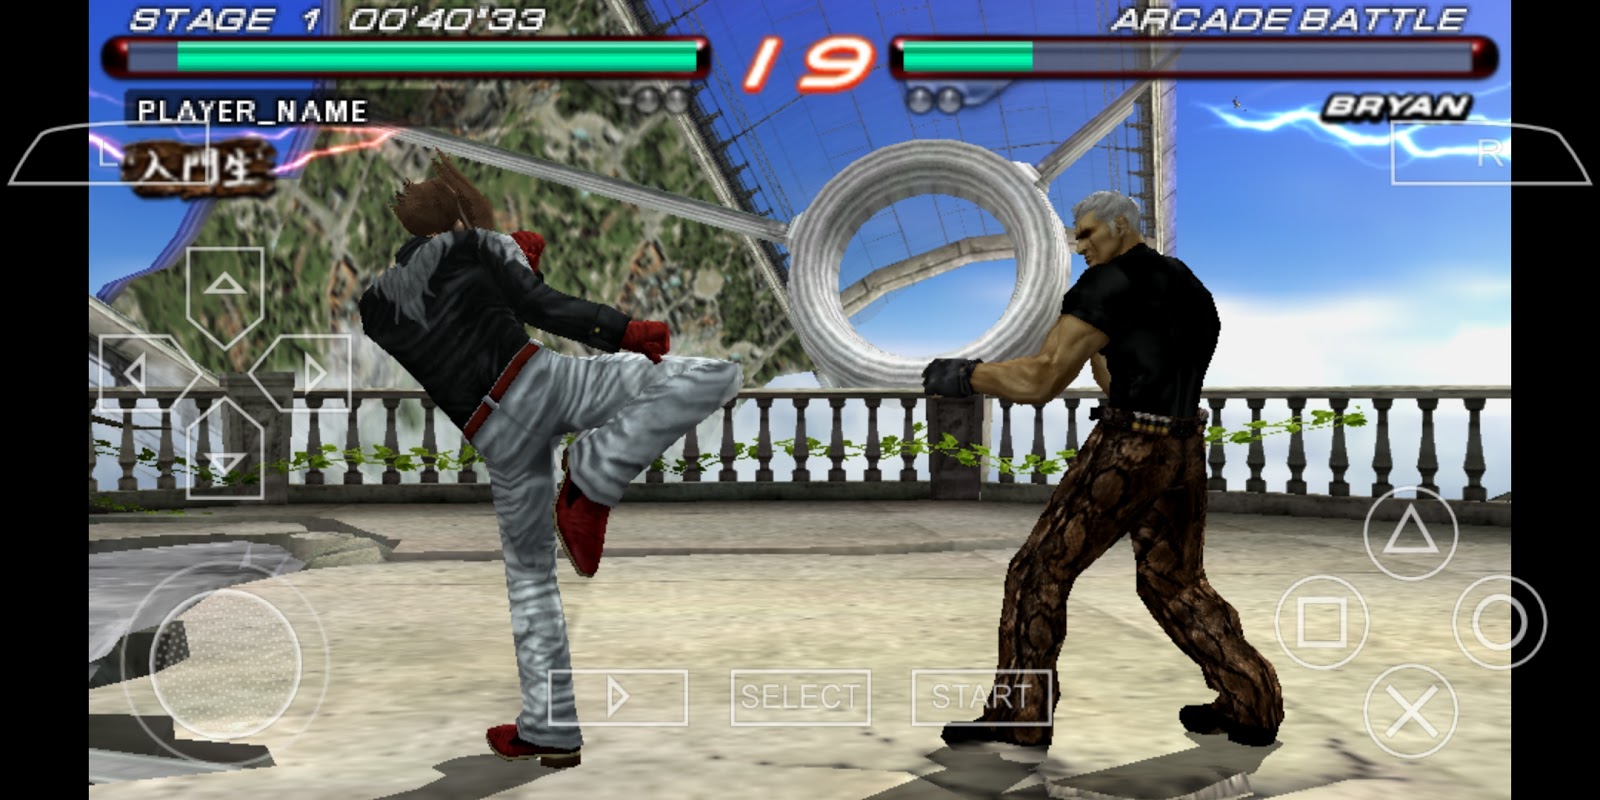 Download Tekken 6 For Ppsspp Emulator